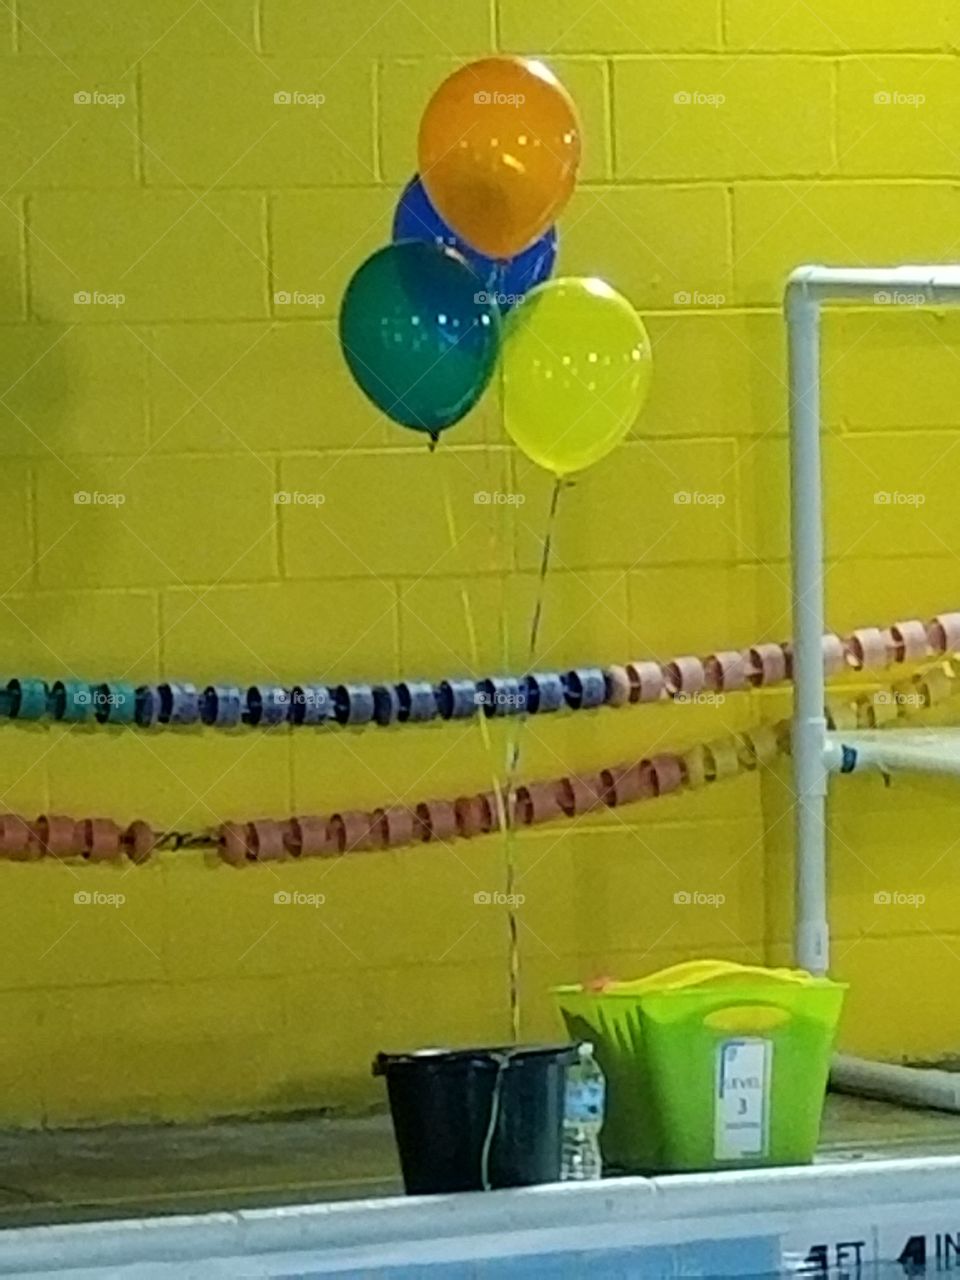 balloons for a teacher's birthday